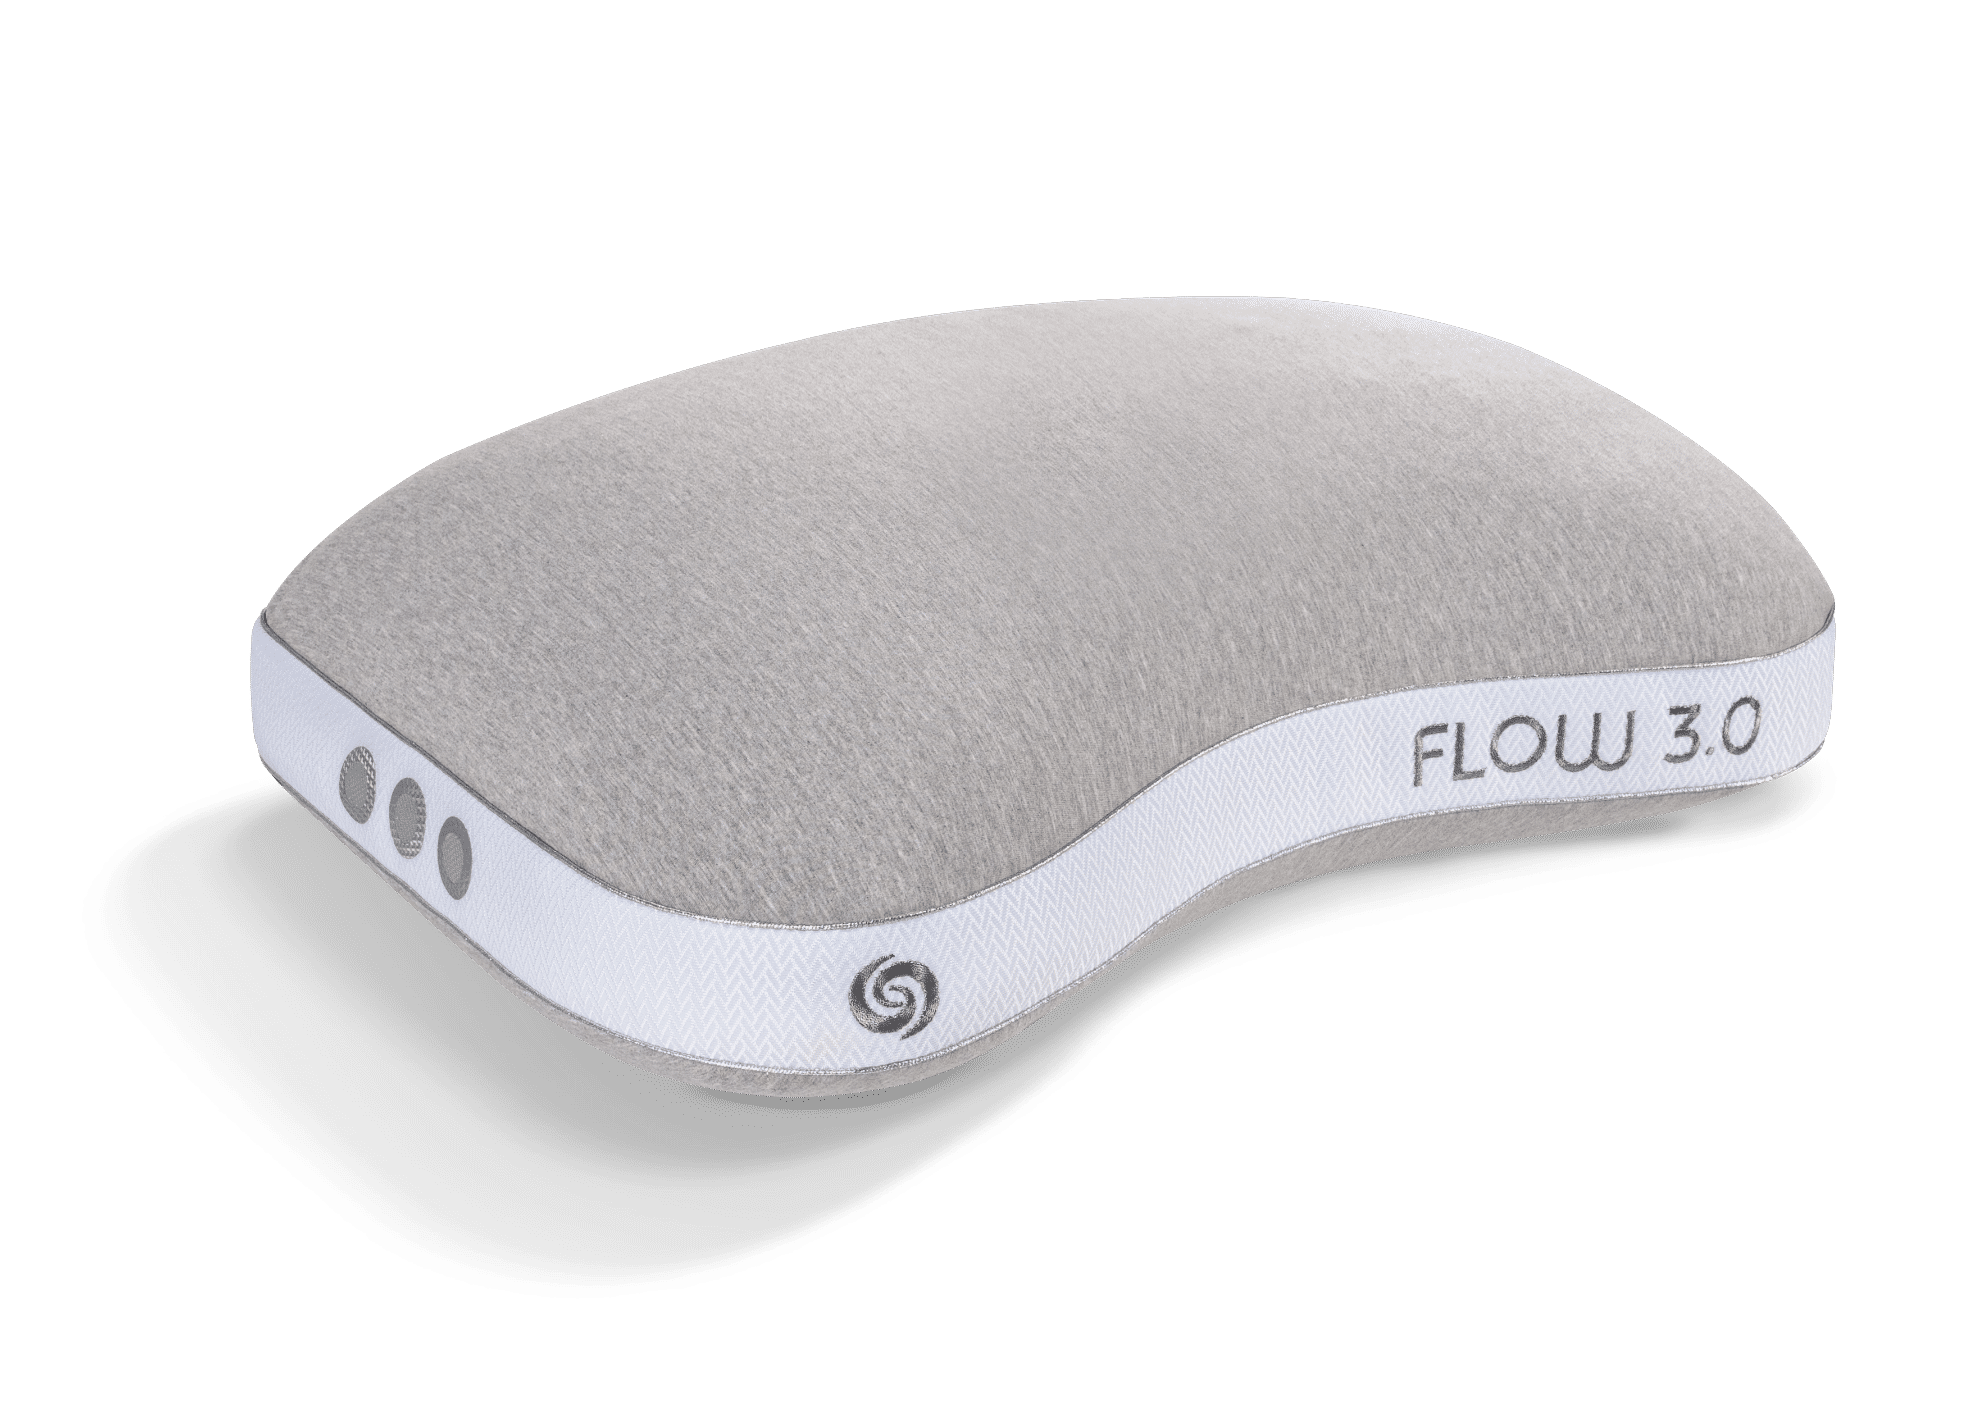 Flow Cuddle Pillow 3.0